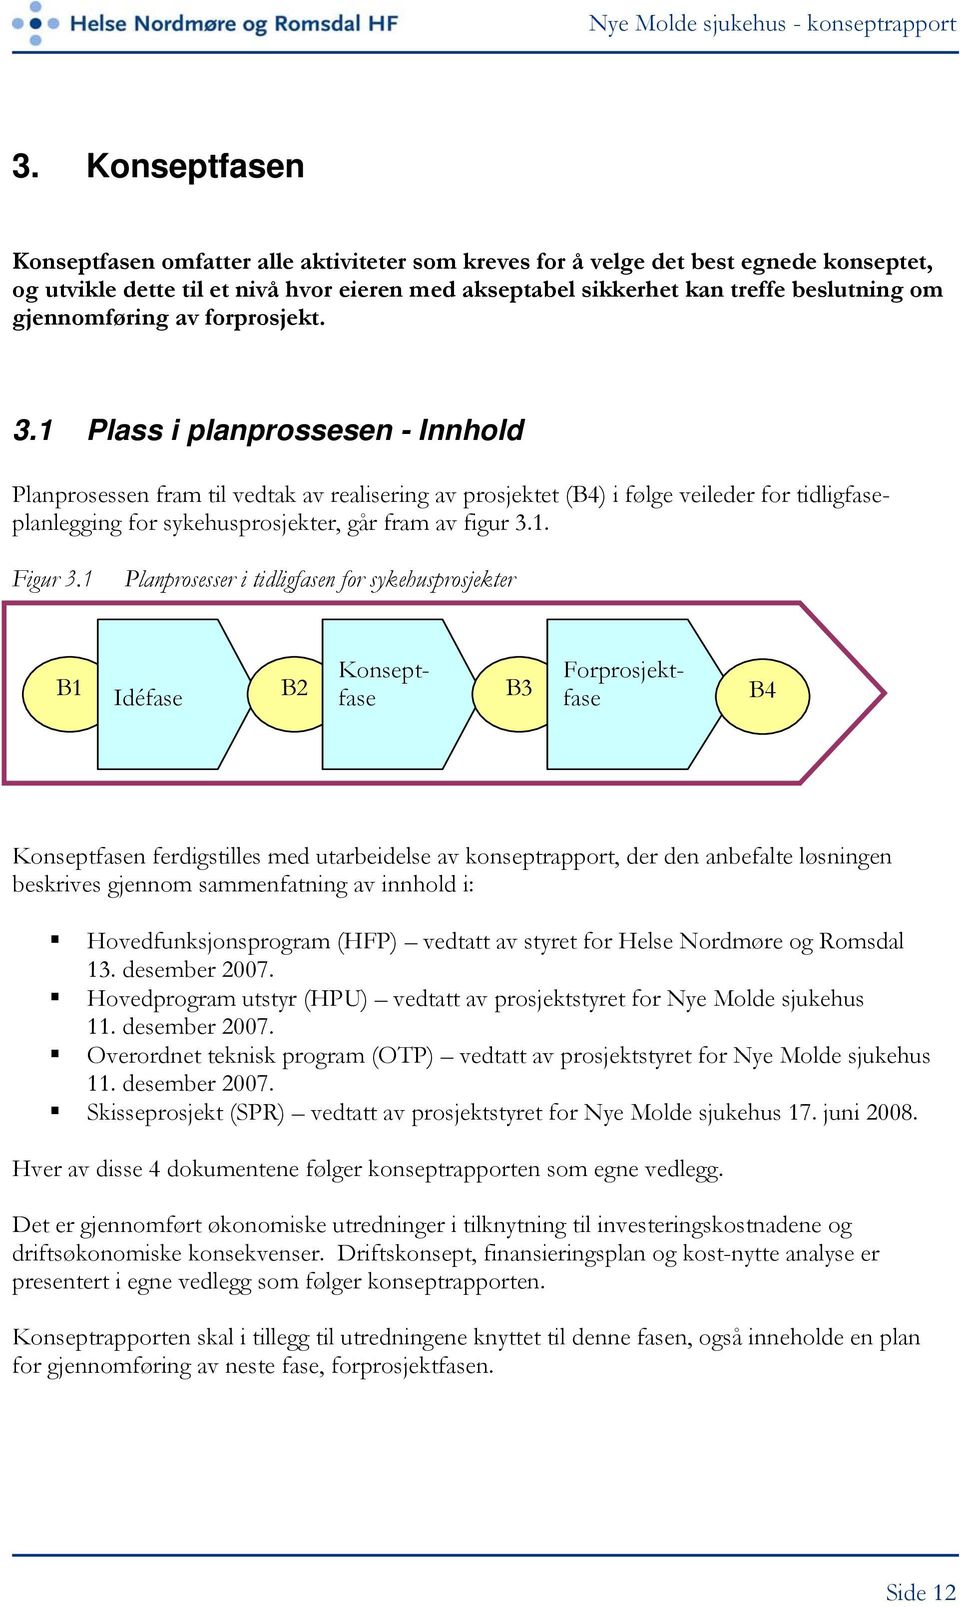 1 Plass i planprossesen - Innhold Planprosessen fram til vedtak av realisering av prosjektet (B4) i følge veileder for tidligfaseplanlegging for sykehusprosjekter, går fram av figur 3.1. Figur 3.